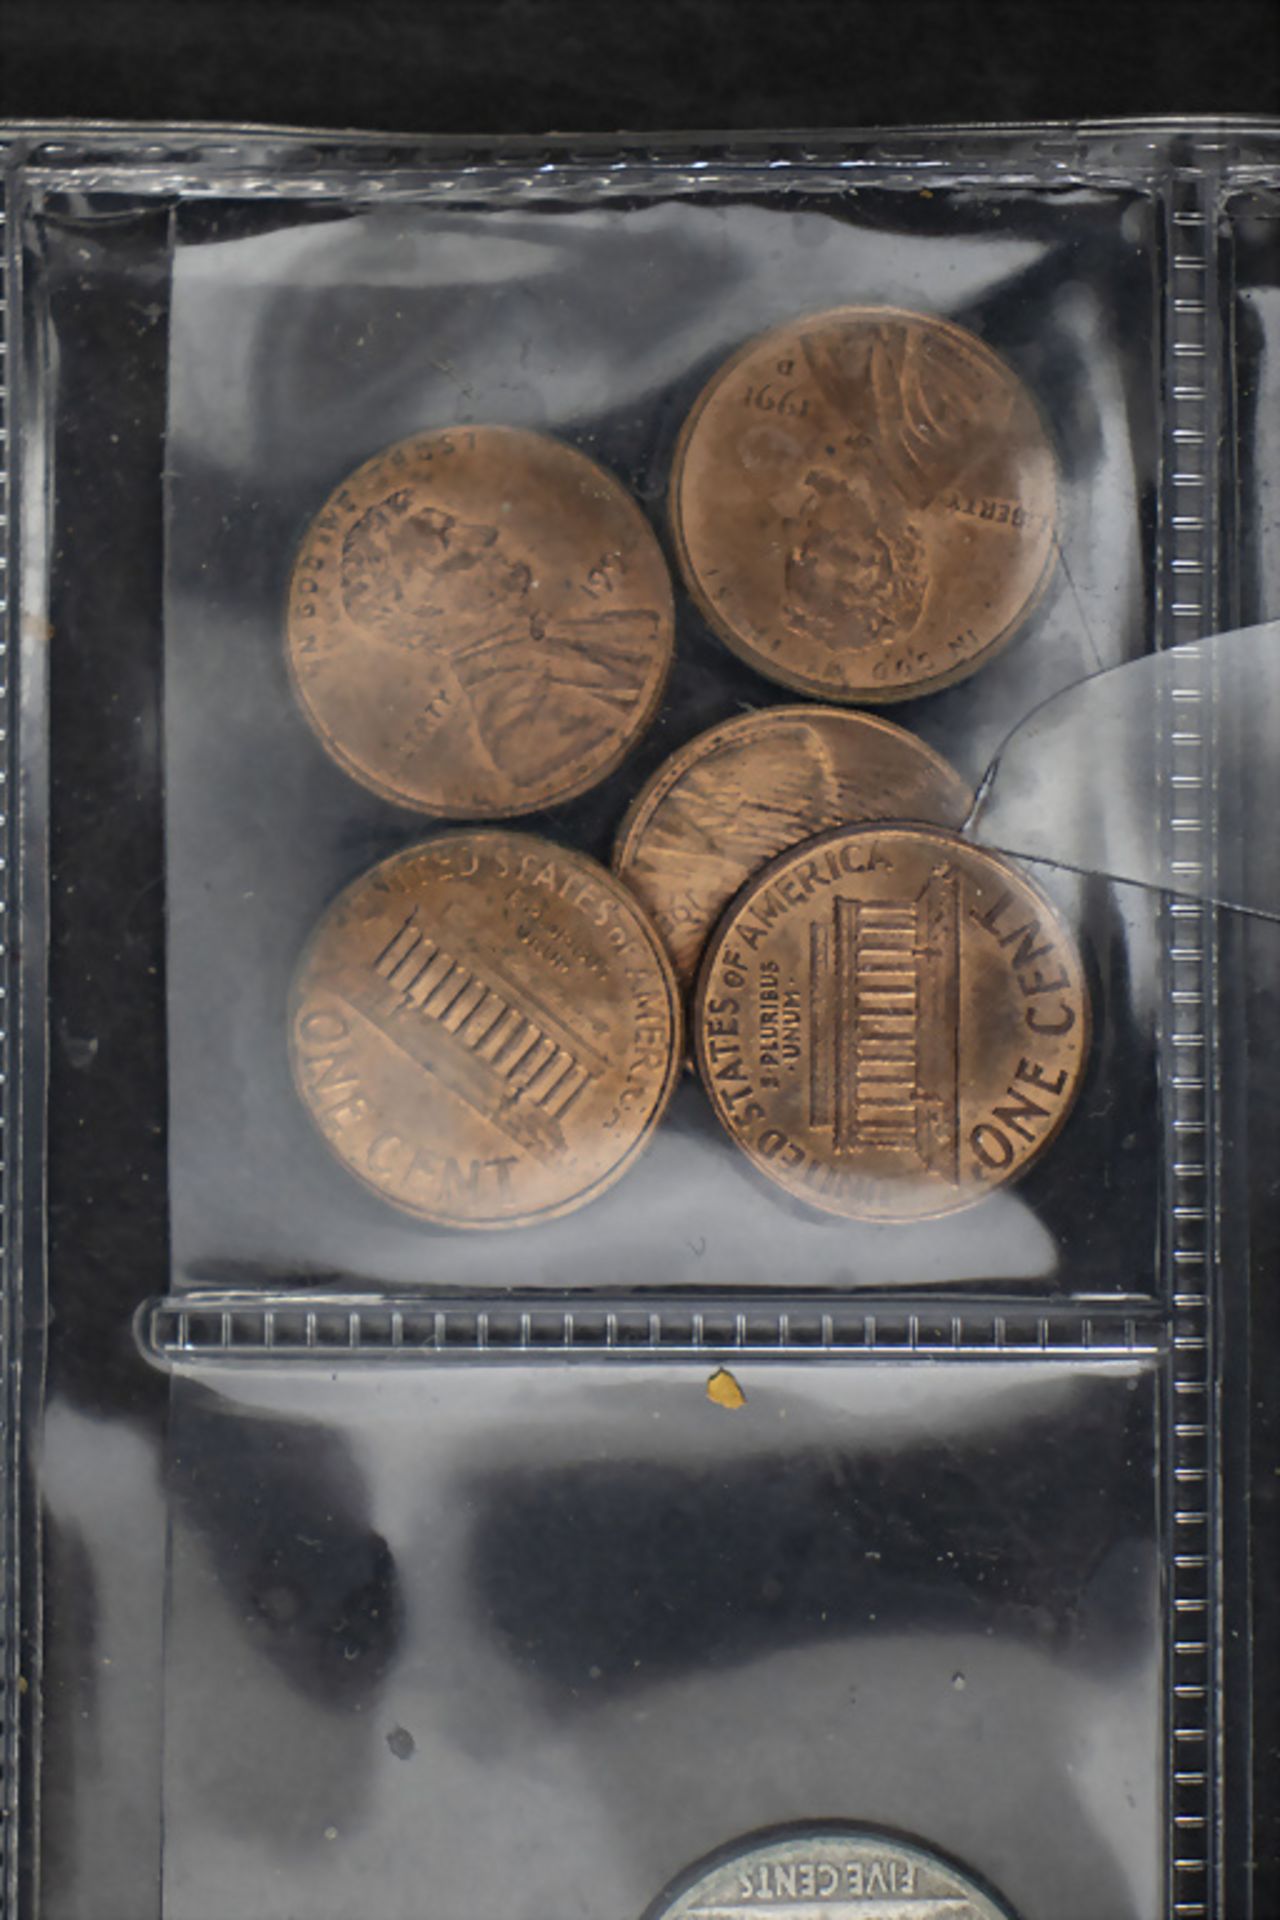 Sammlung Münzen 'USA' / A collection of US coins - Bild 8 aus 9